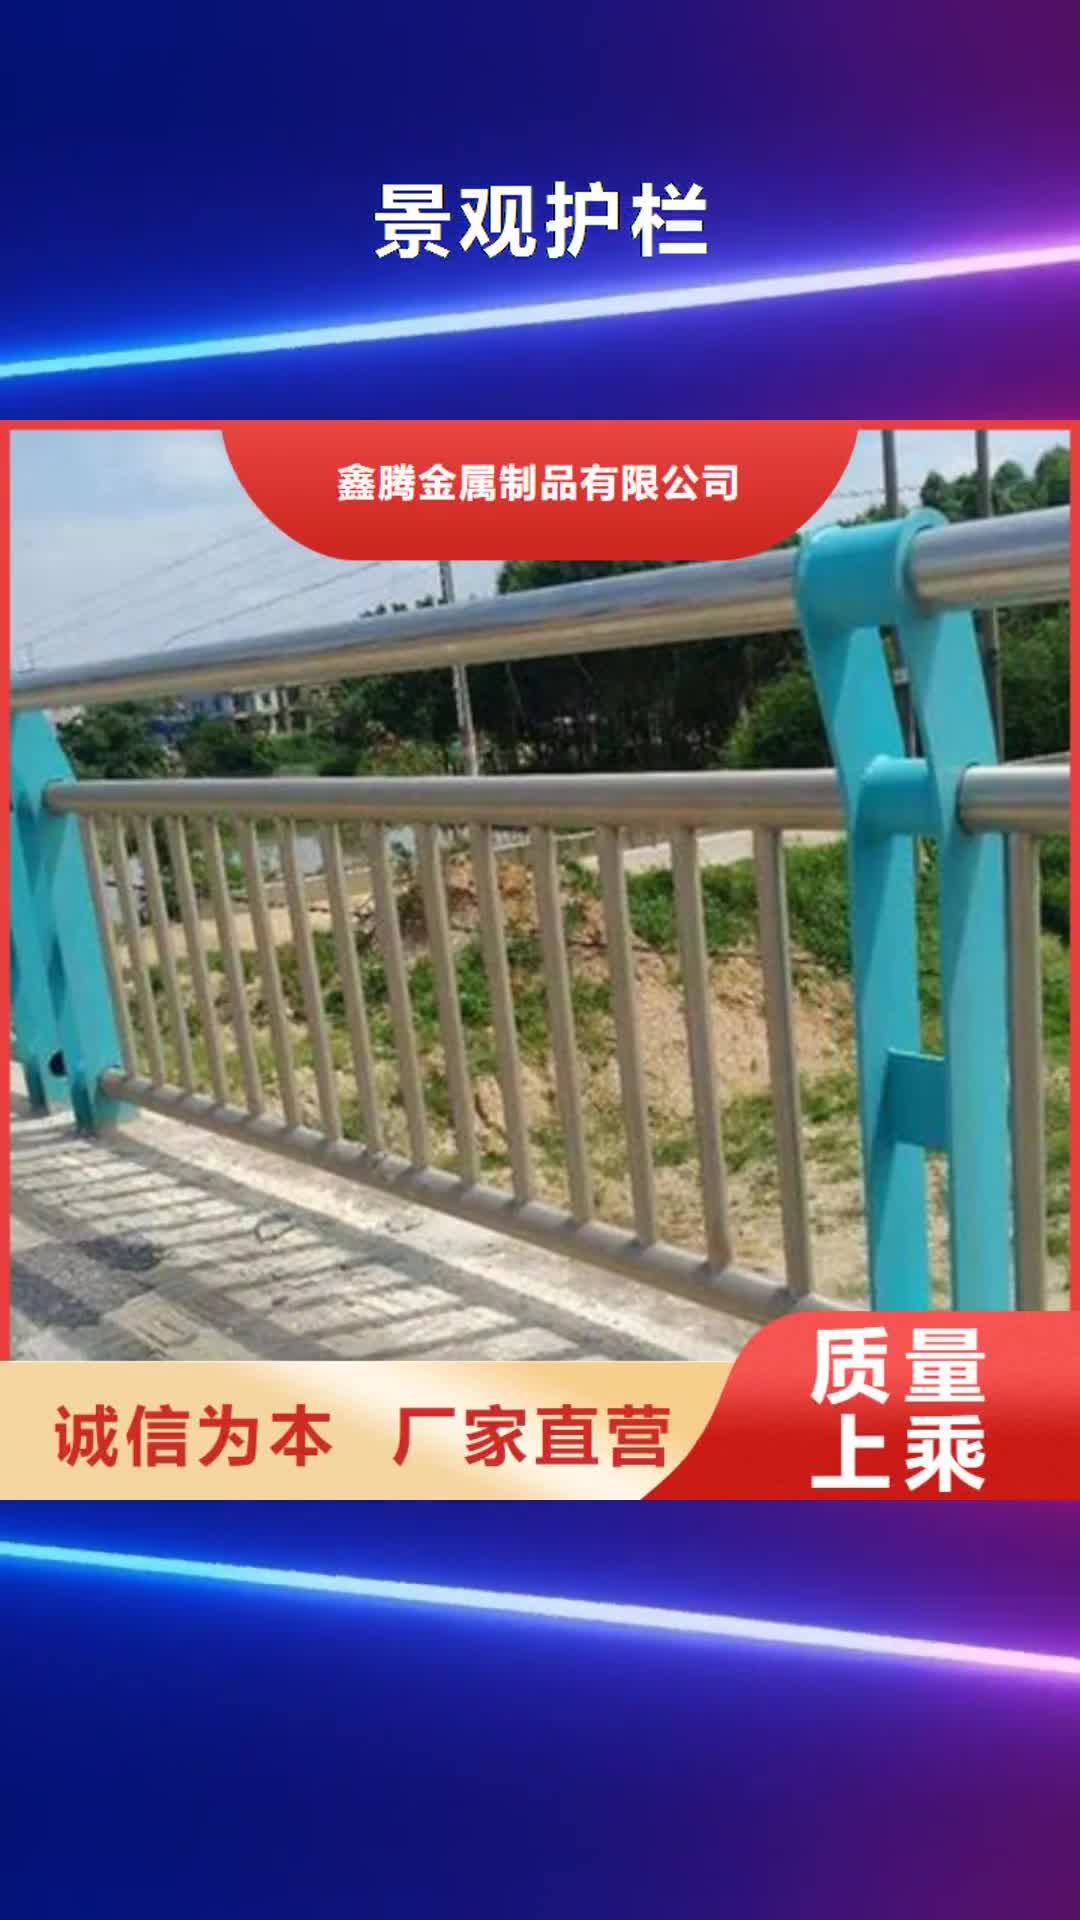 贵州 景观护栏【玻璃护栏】质量安全可靠